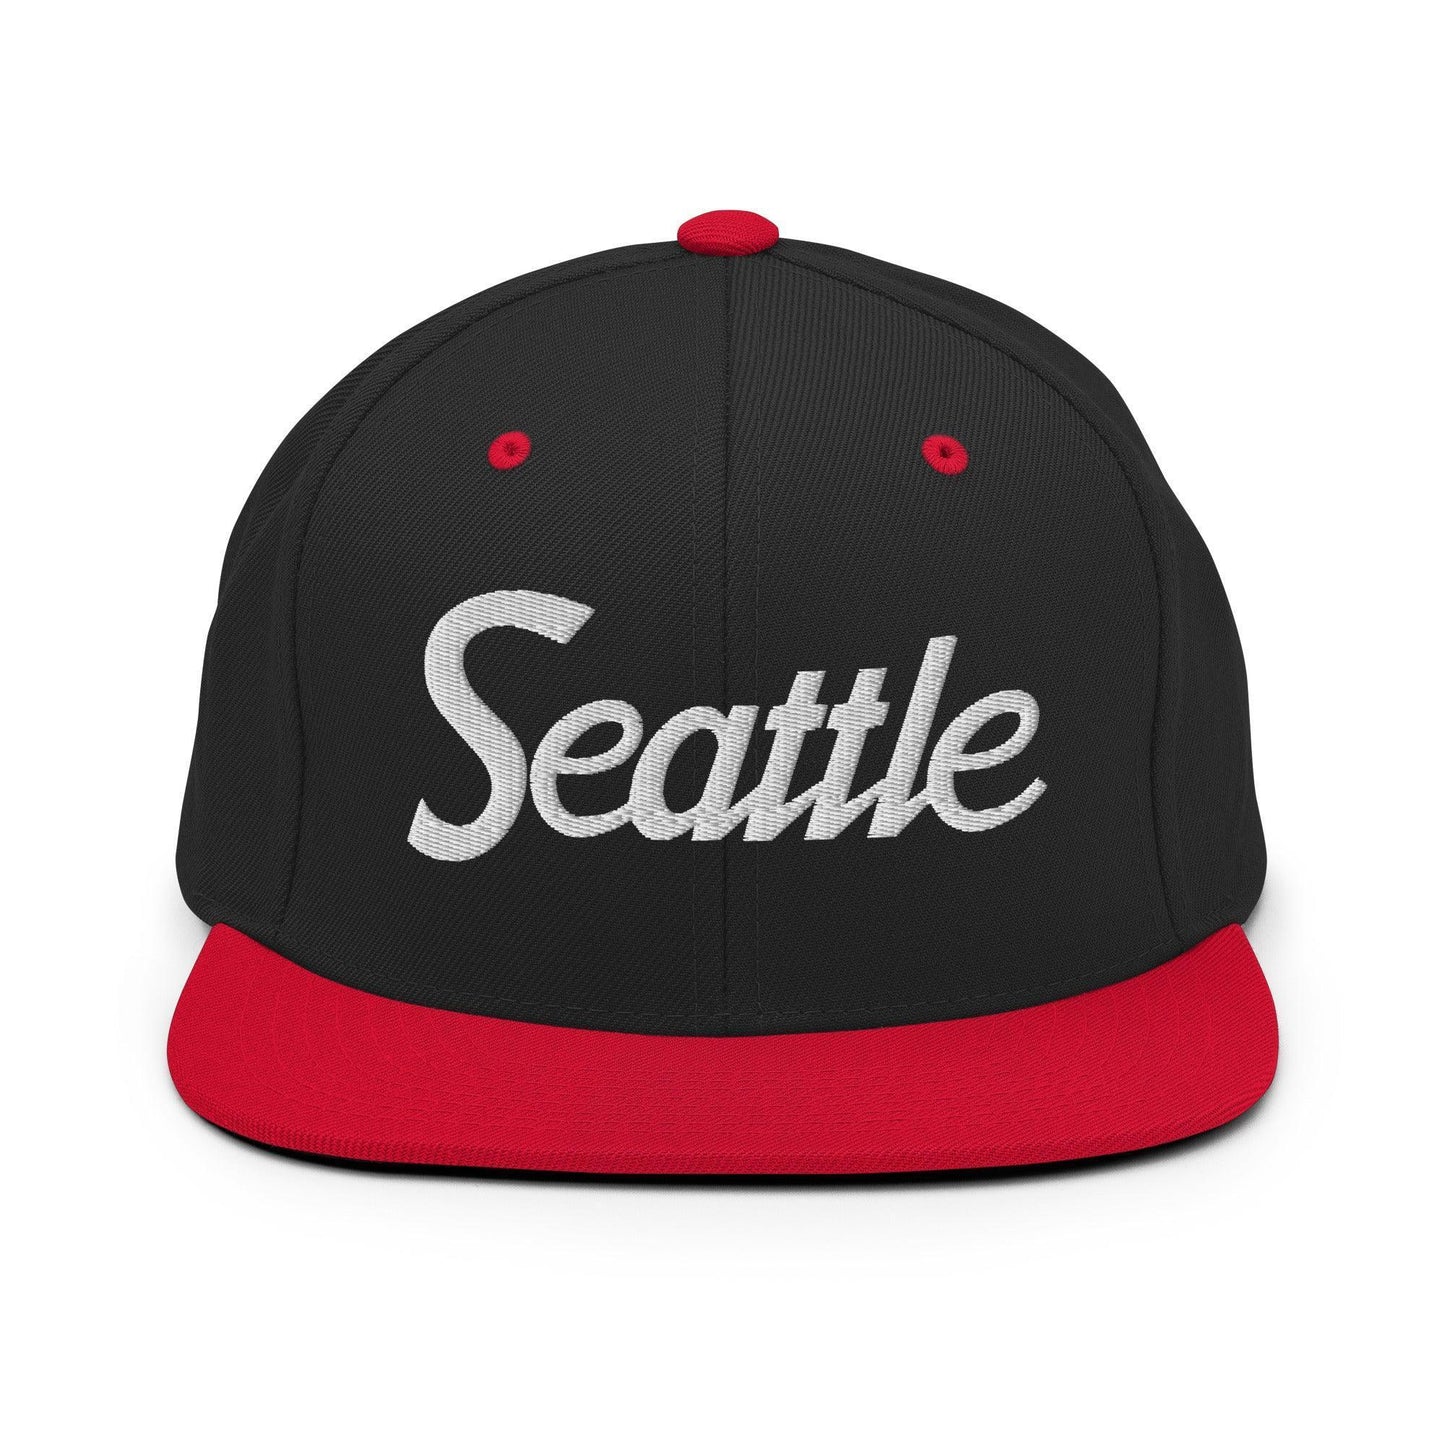 Seattle Script Snapback Hat Black Red